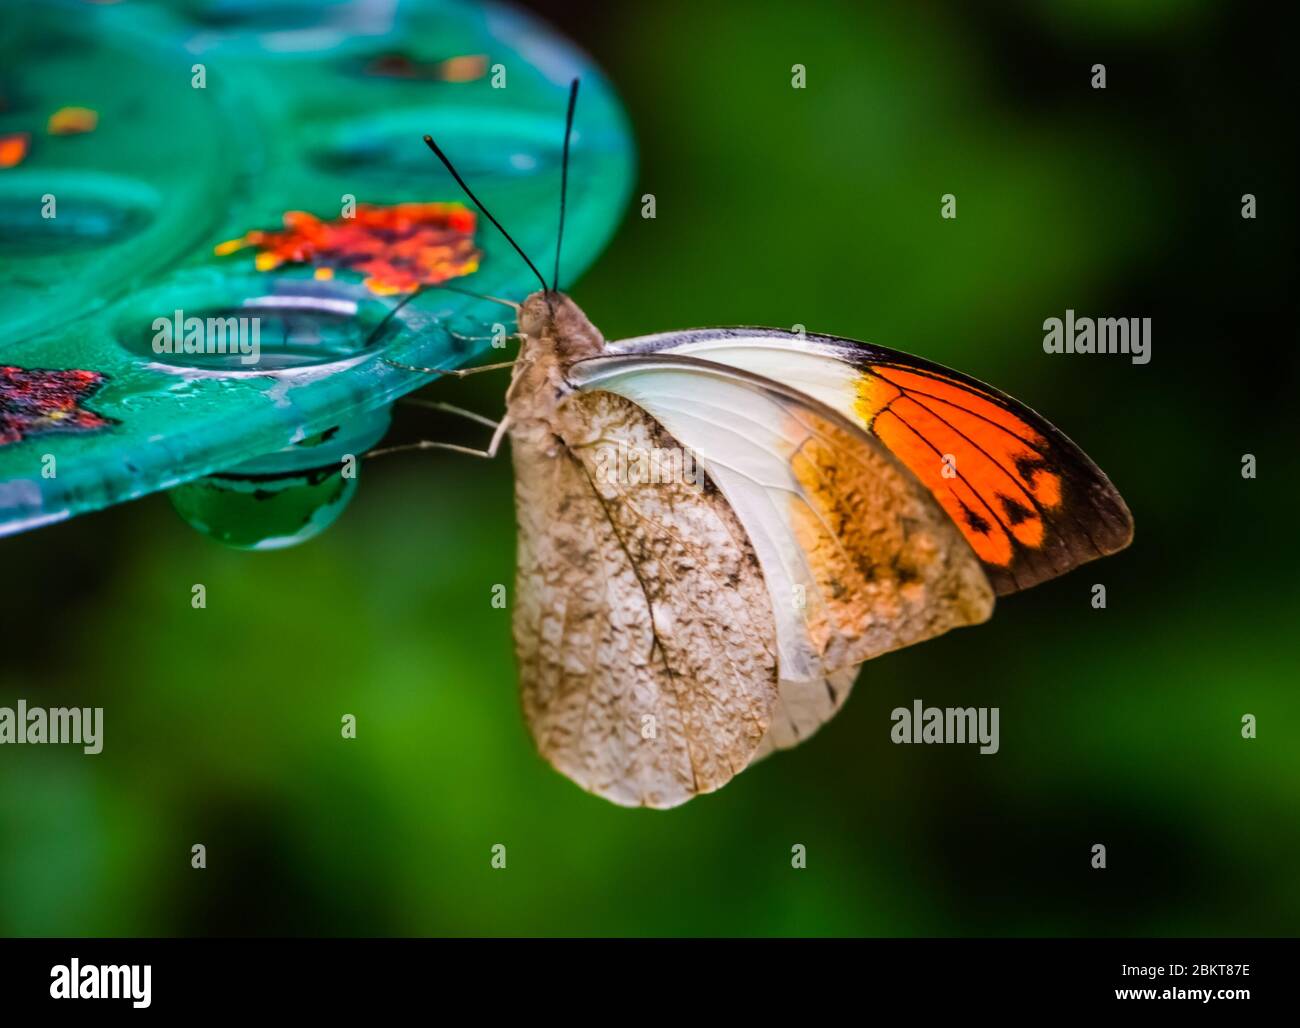 Vista lateral de una mariposa gigante de punta naranja, hermosa especie de insecto tropical de Asia Foto de stock